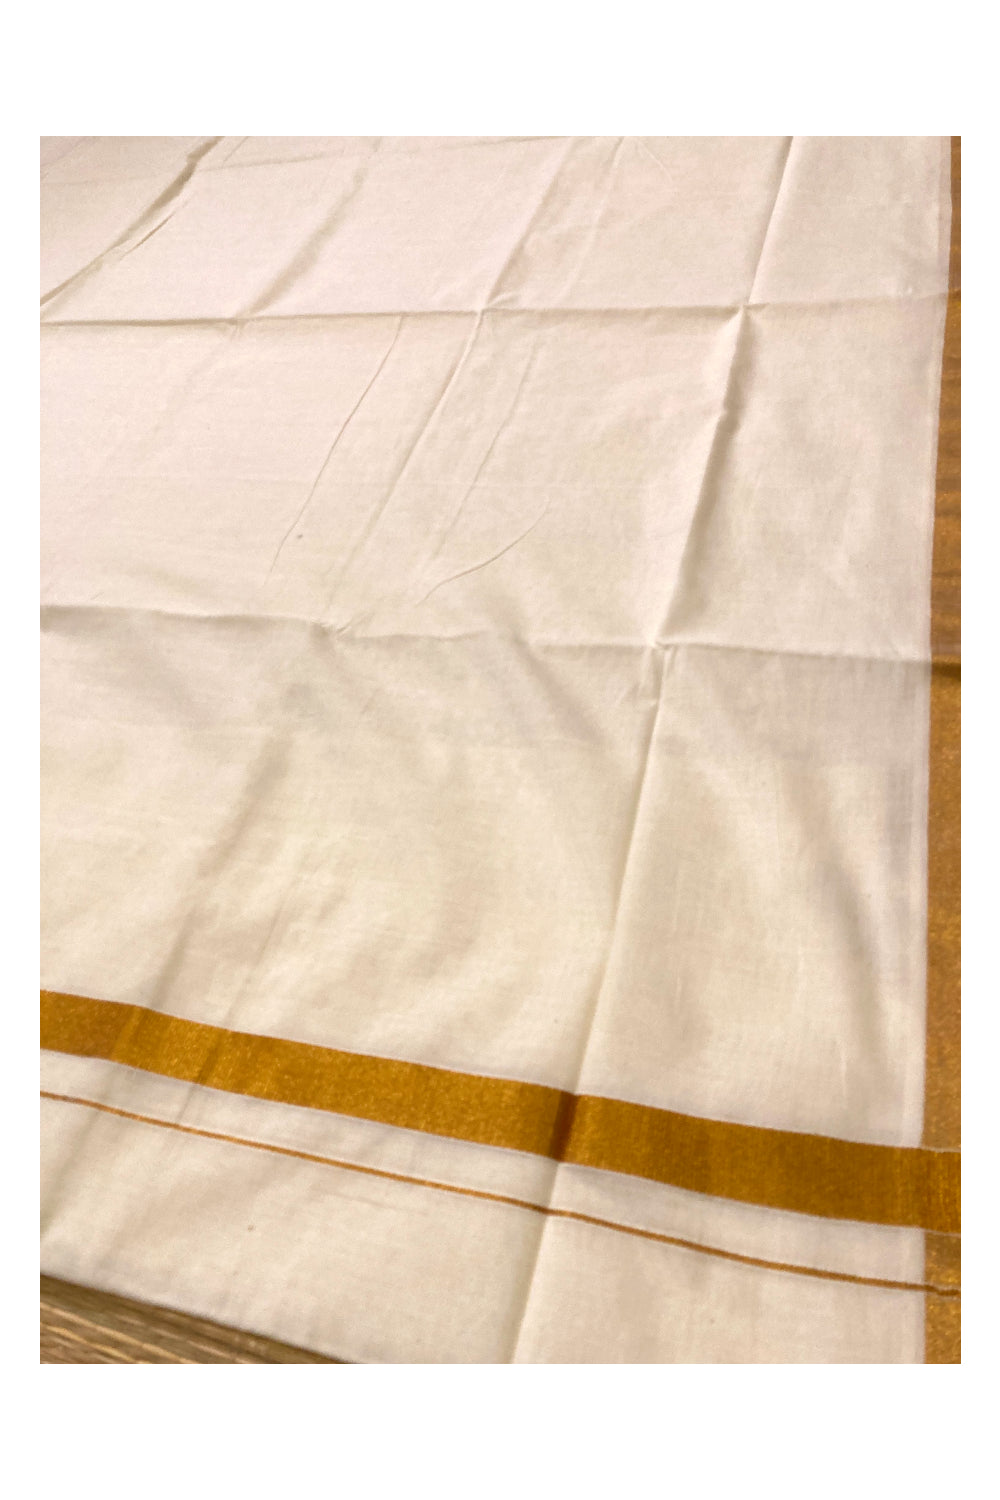 Kerala Plain Mixed Fabric Kasavu Saree with 1x1 Border